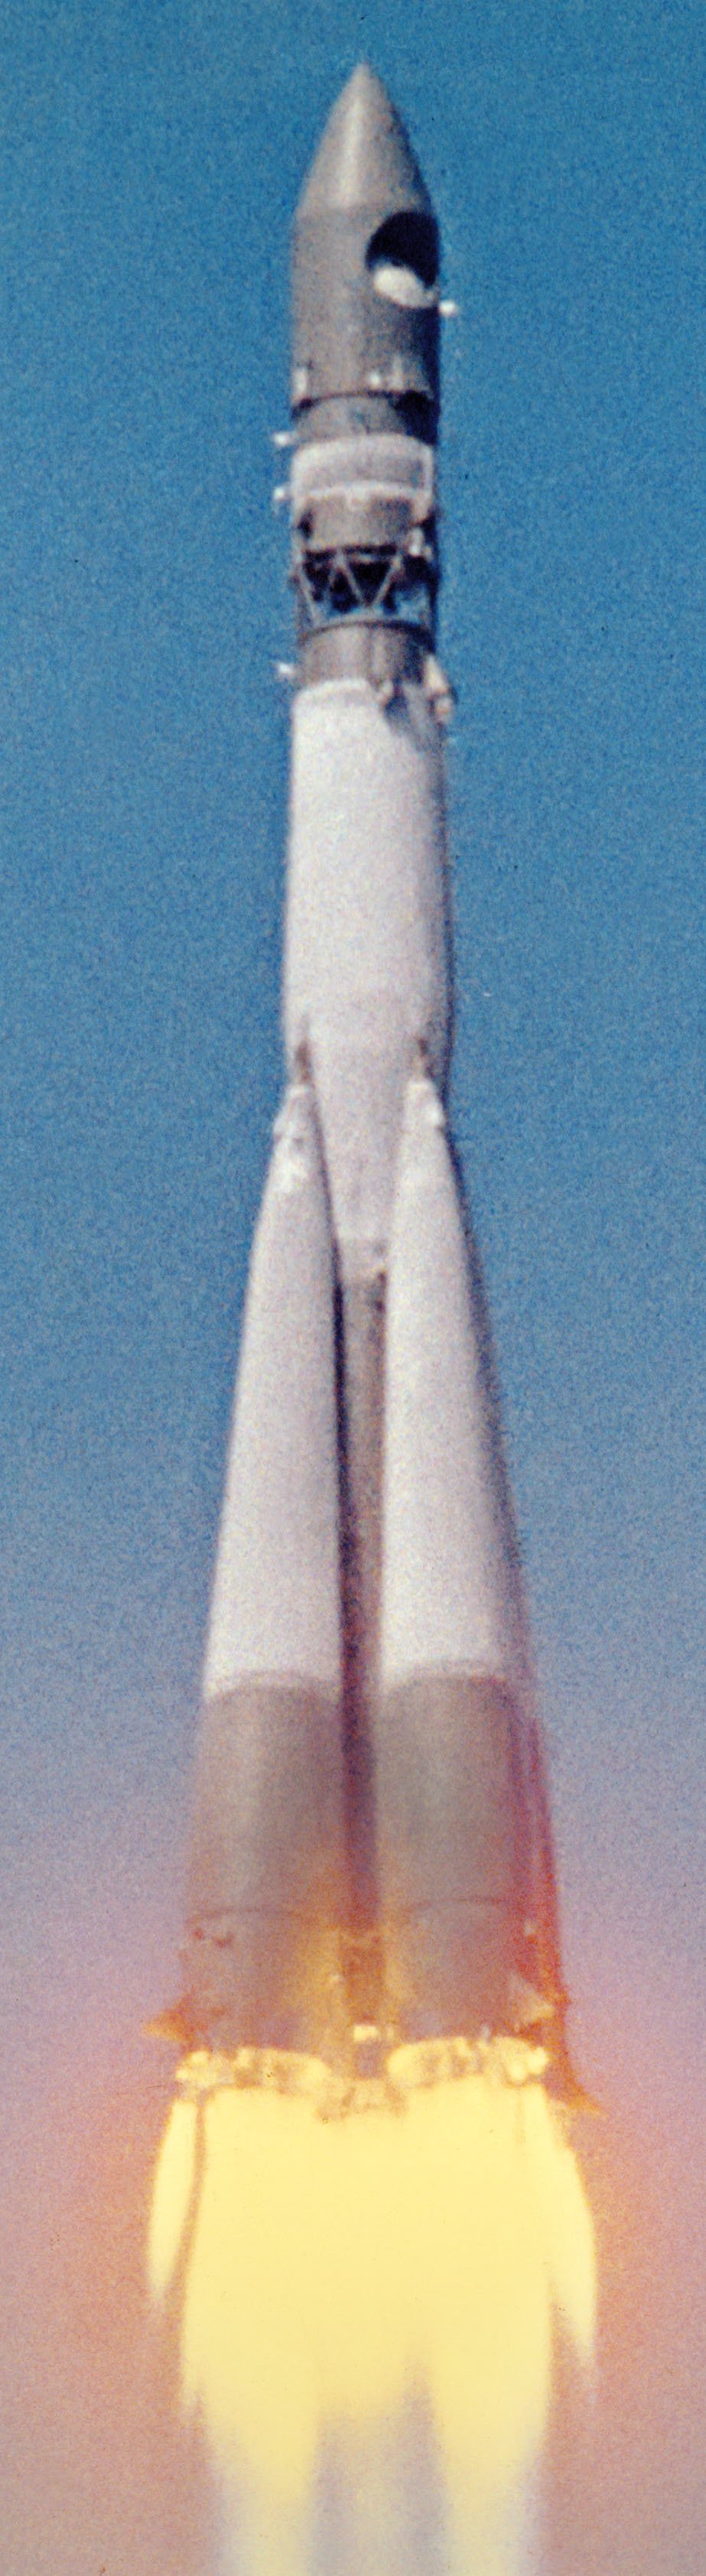 Фото ракеты гагарина. Ракета Юрия Гагарина Восток-1. Восток 1 Гагарин 1961. Байконур Восток 1 1961. Космический корабль Восток 1 Юрия Гагарина.